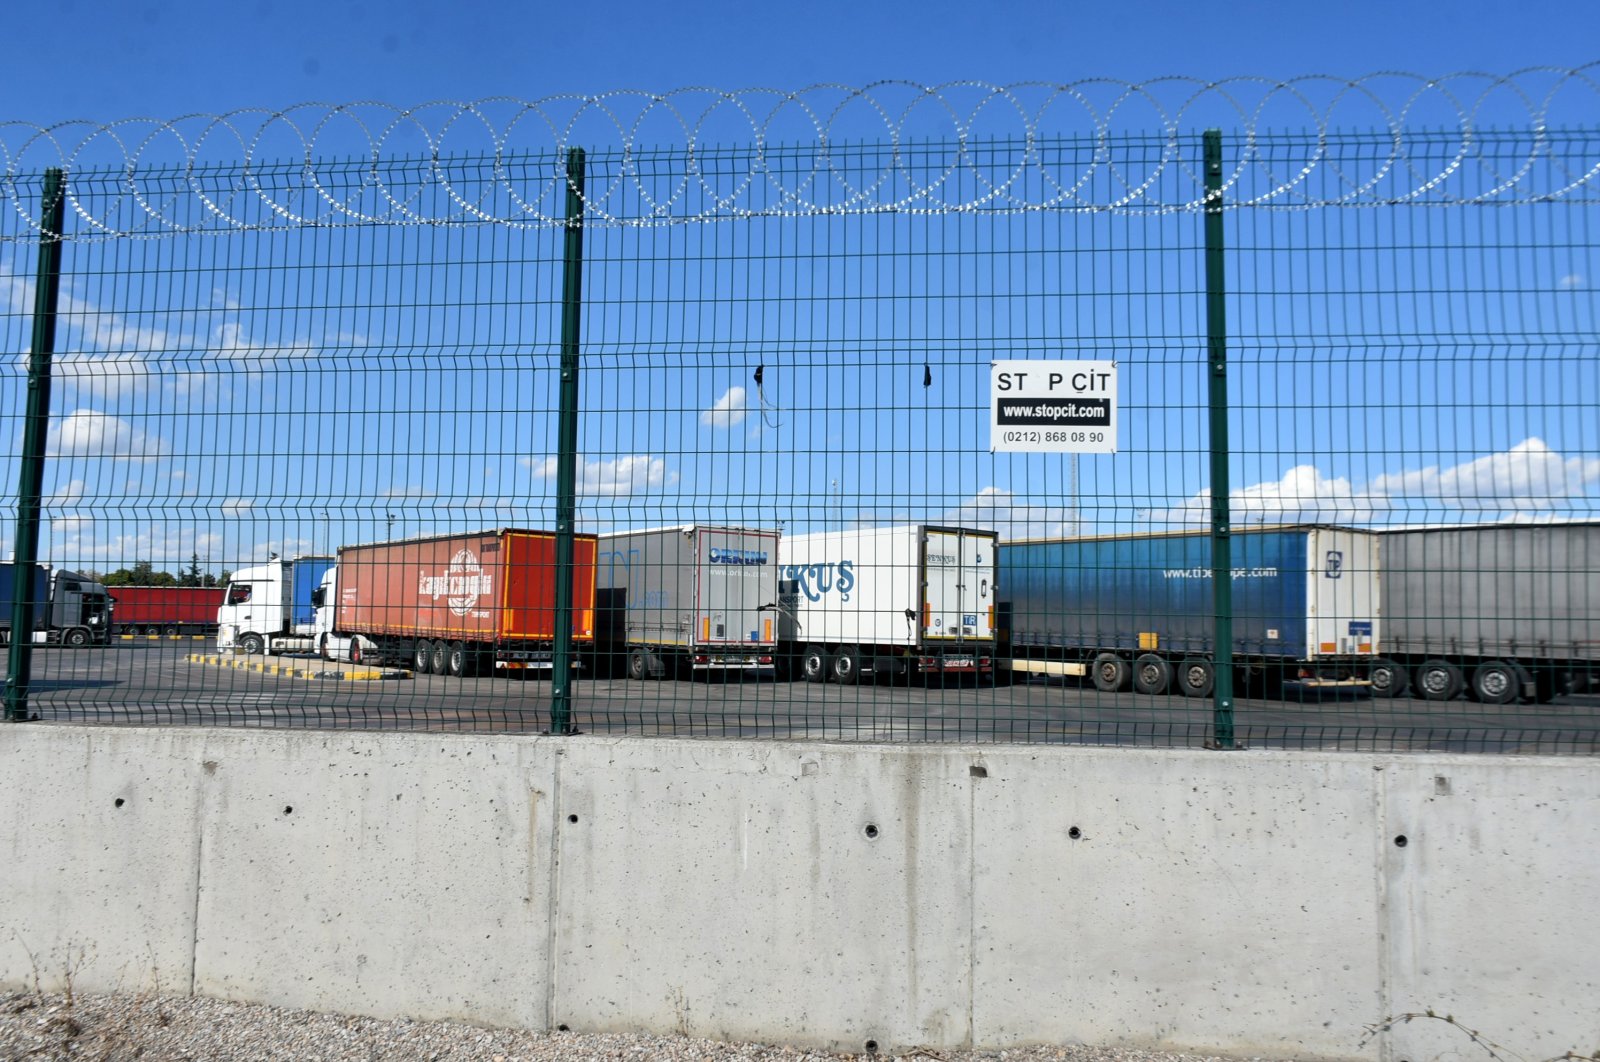 Kota perbatasan Turki memerangi migrasi ilegal ke Eropa